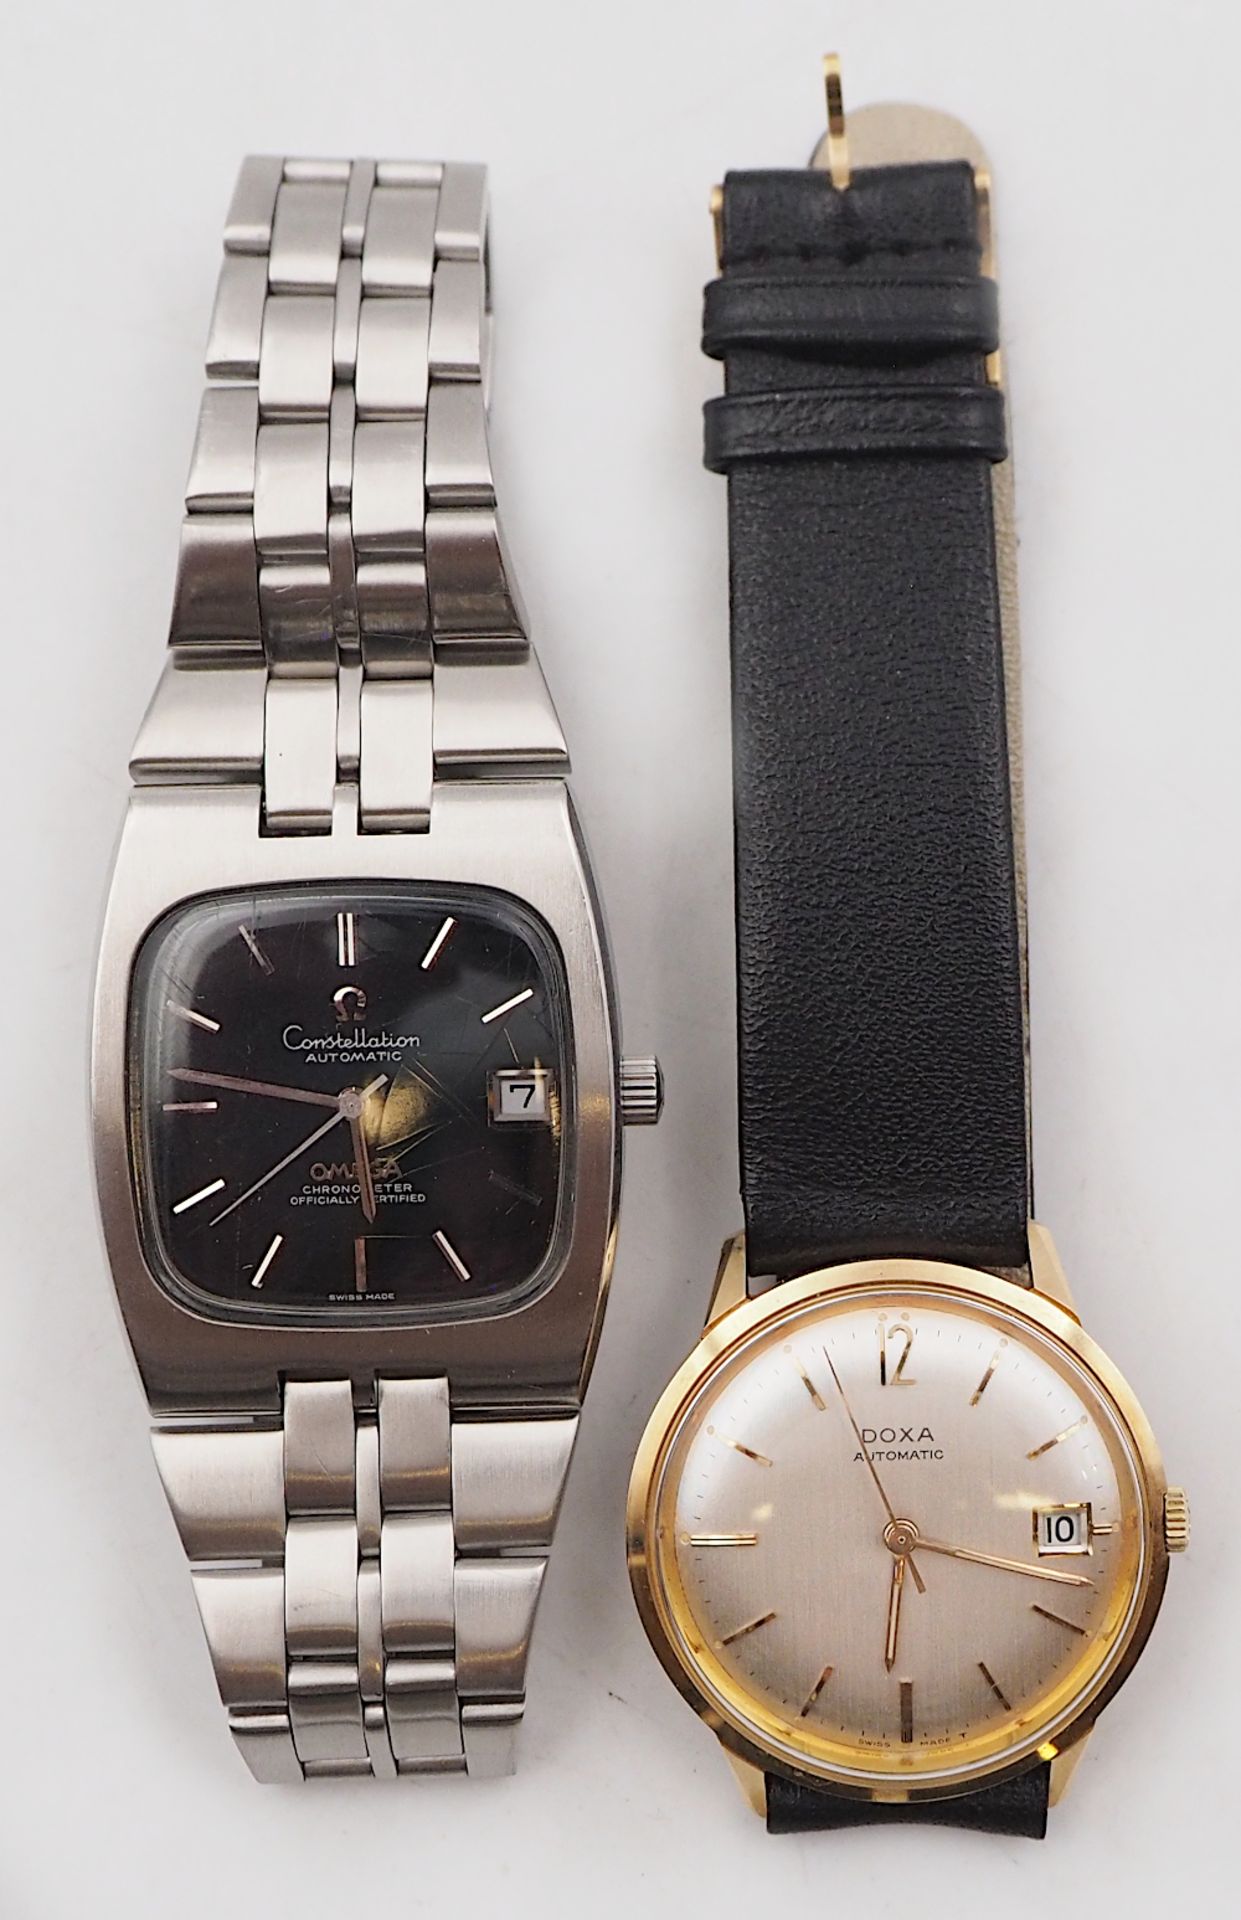 1 Armbanduhr OMEGA Constellation Automatic sowie 1 Armbanduhr DOXA Automatic wohl verg. Lederband er